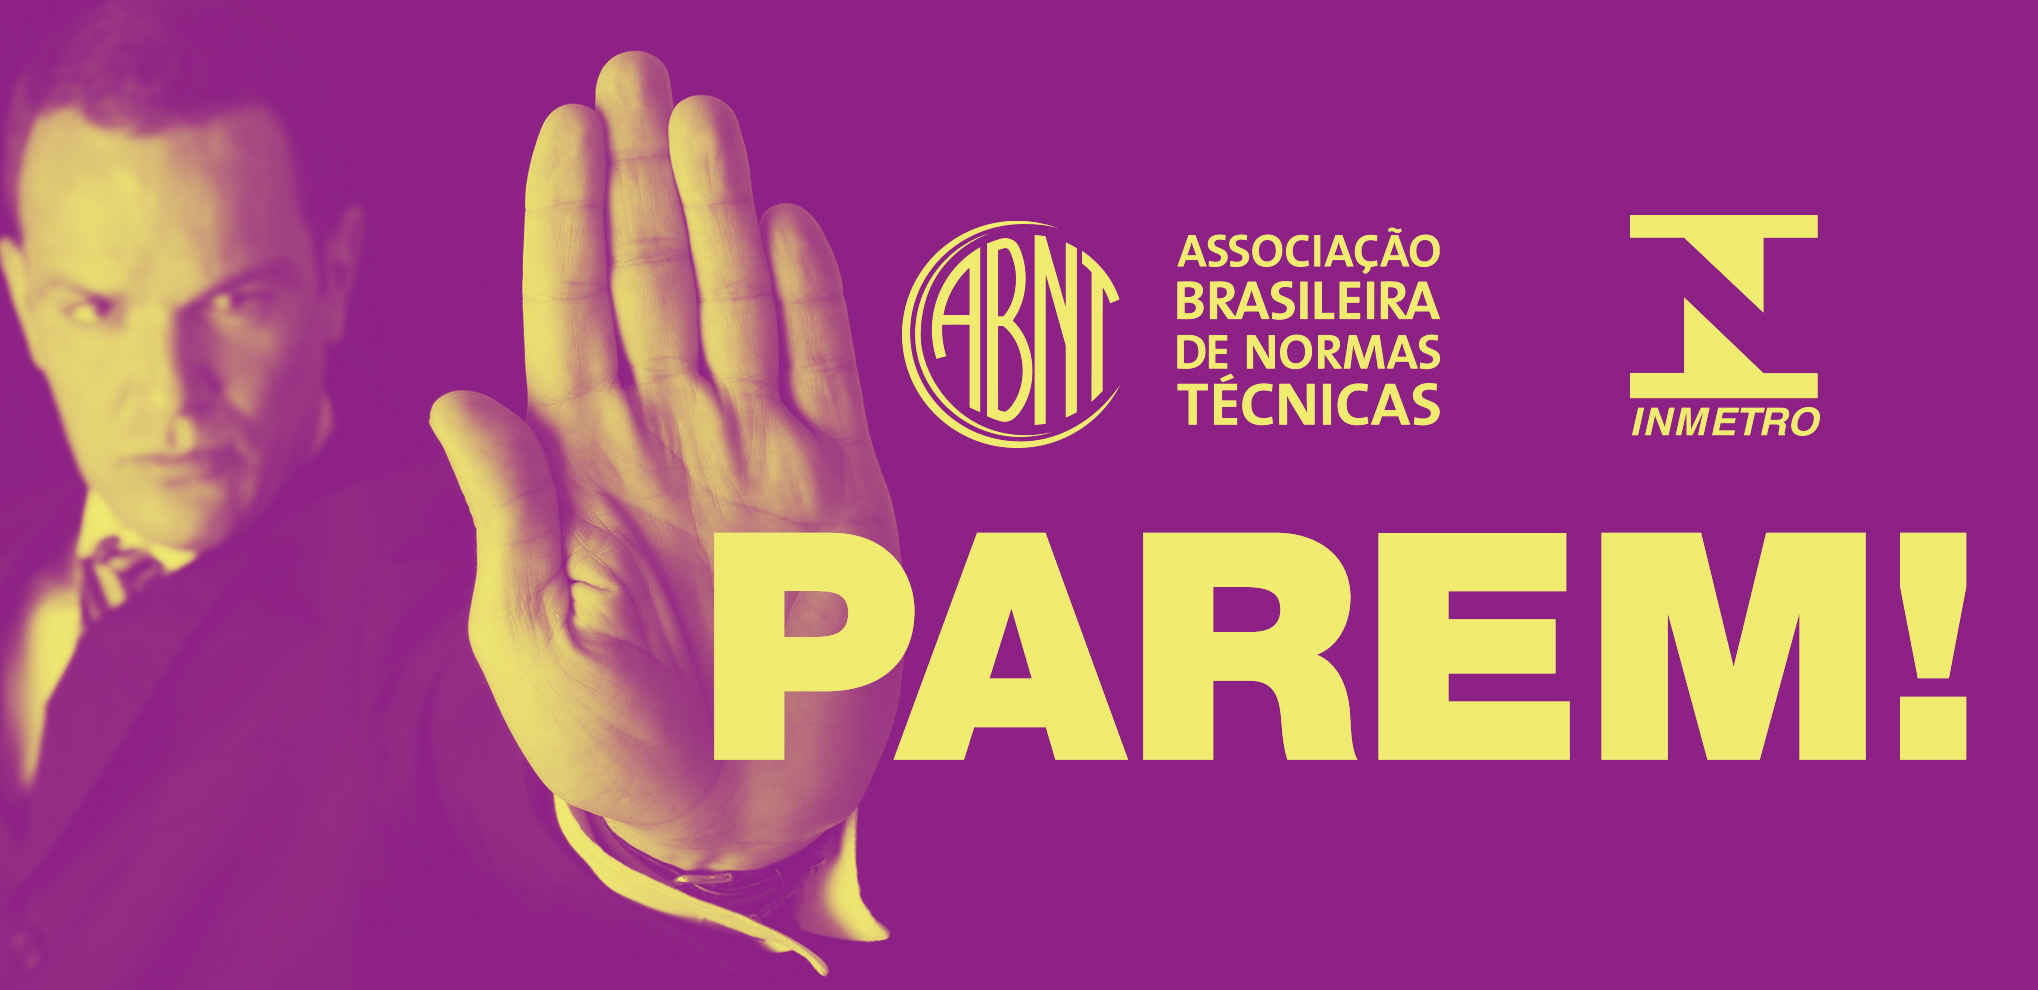 O presidente da ABNT quer acabar com o processo de normalização técnica no Brasil